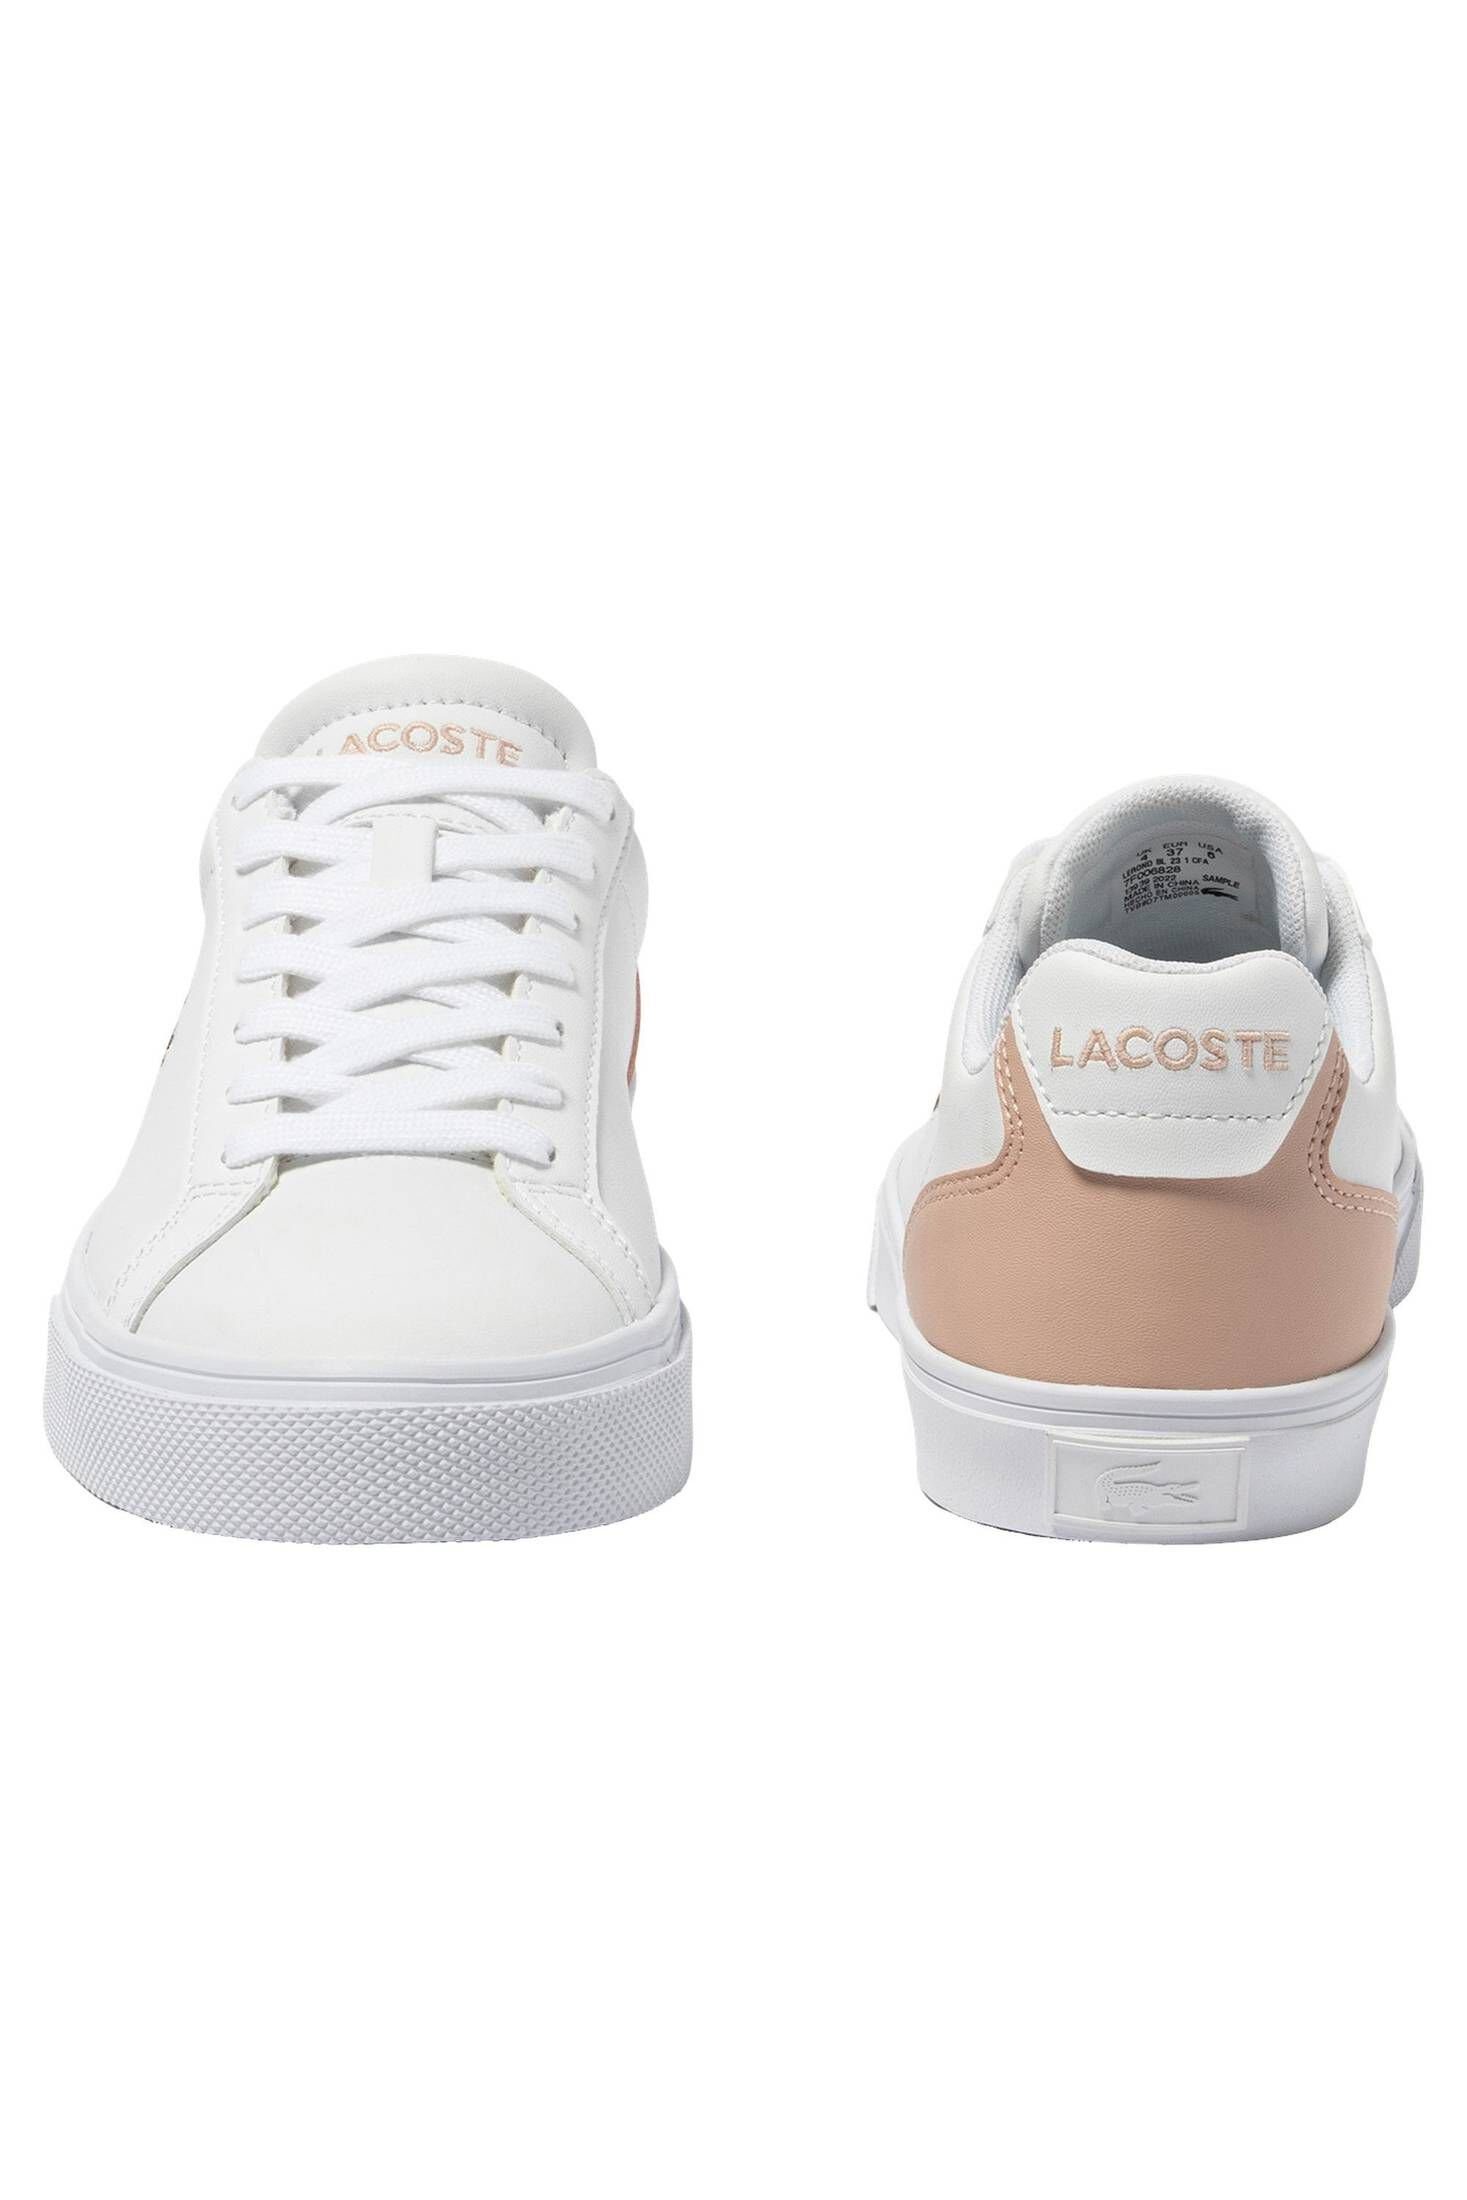 Lacoste Damen Sneaker LEROND (982) PRO BASELINE weiss/rosa LEATHER Sneaker